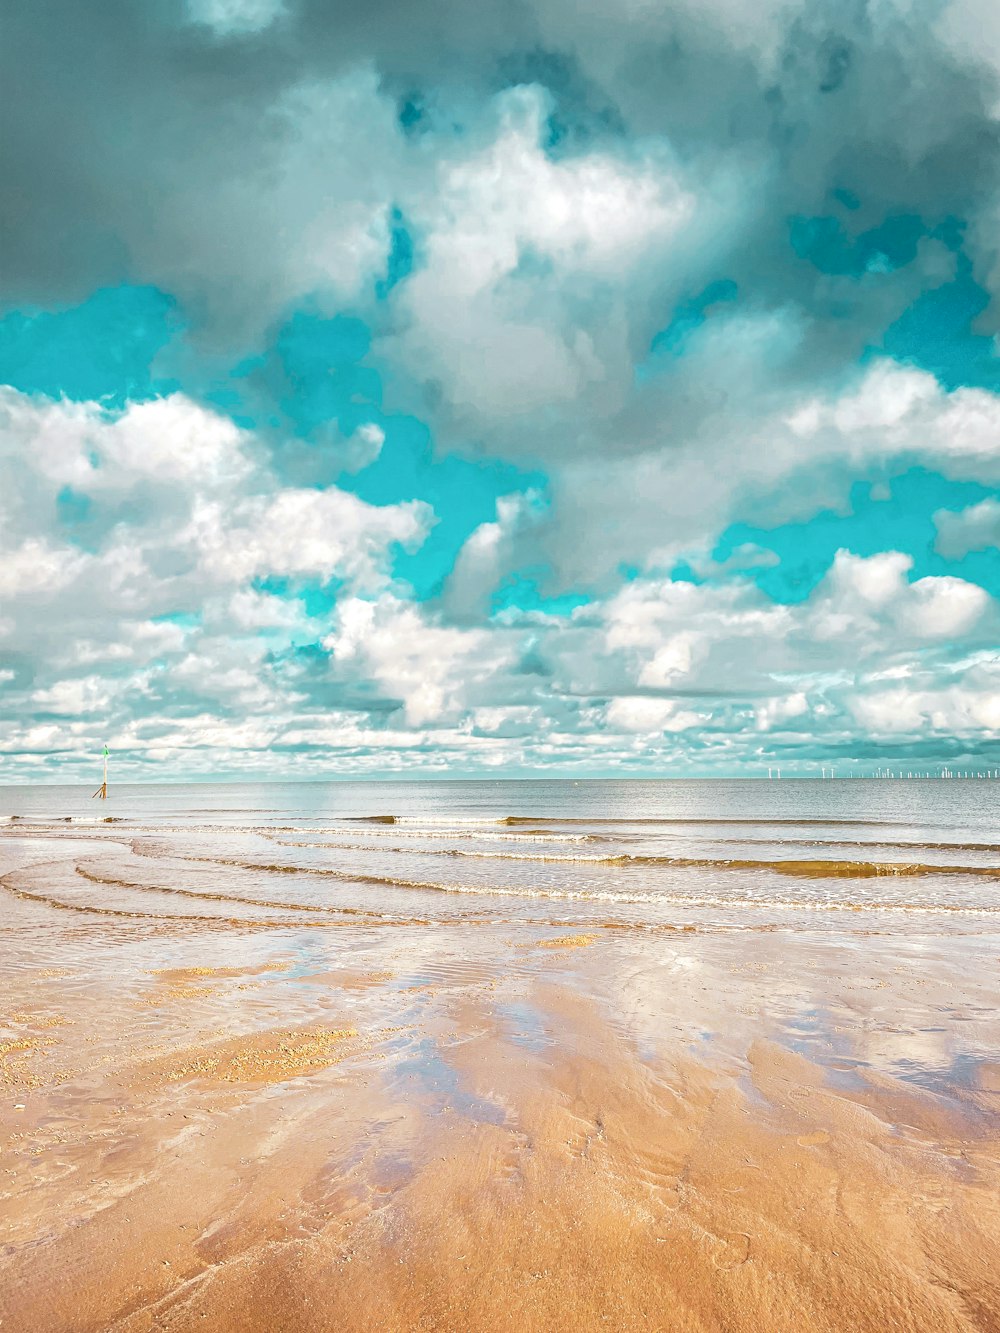 a sandy beach under a cloudy blue sky